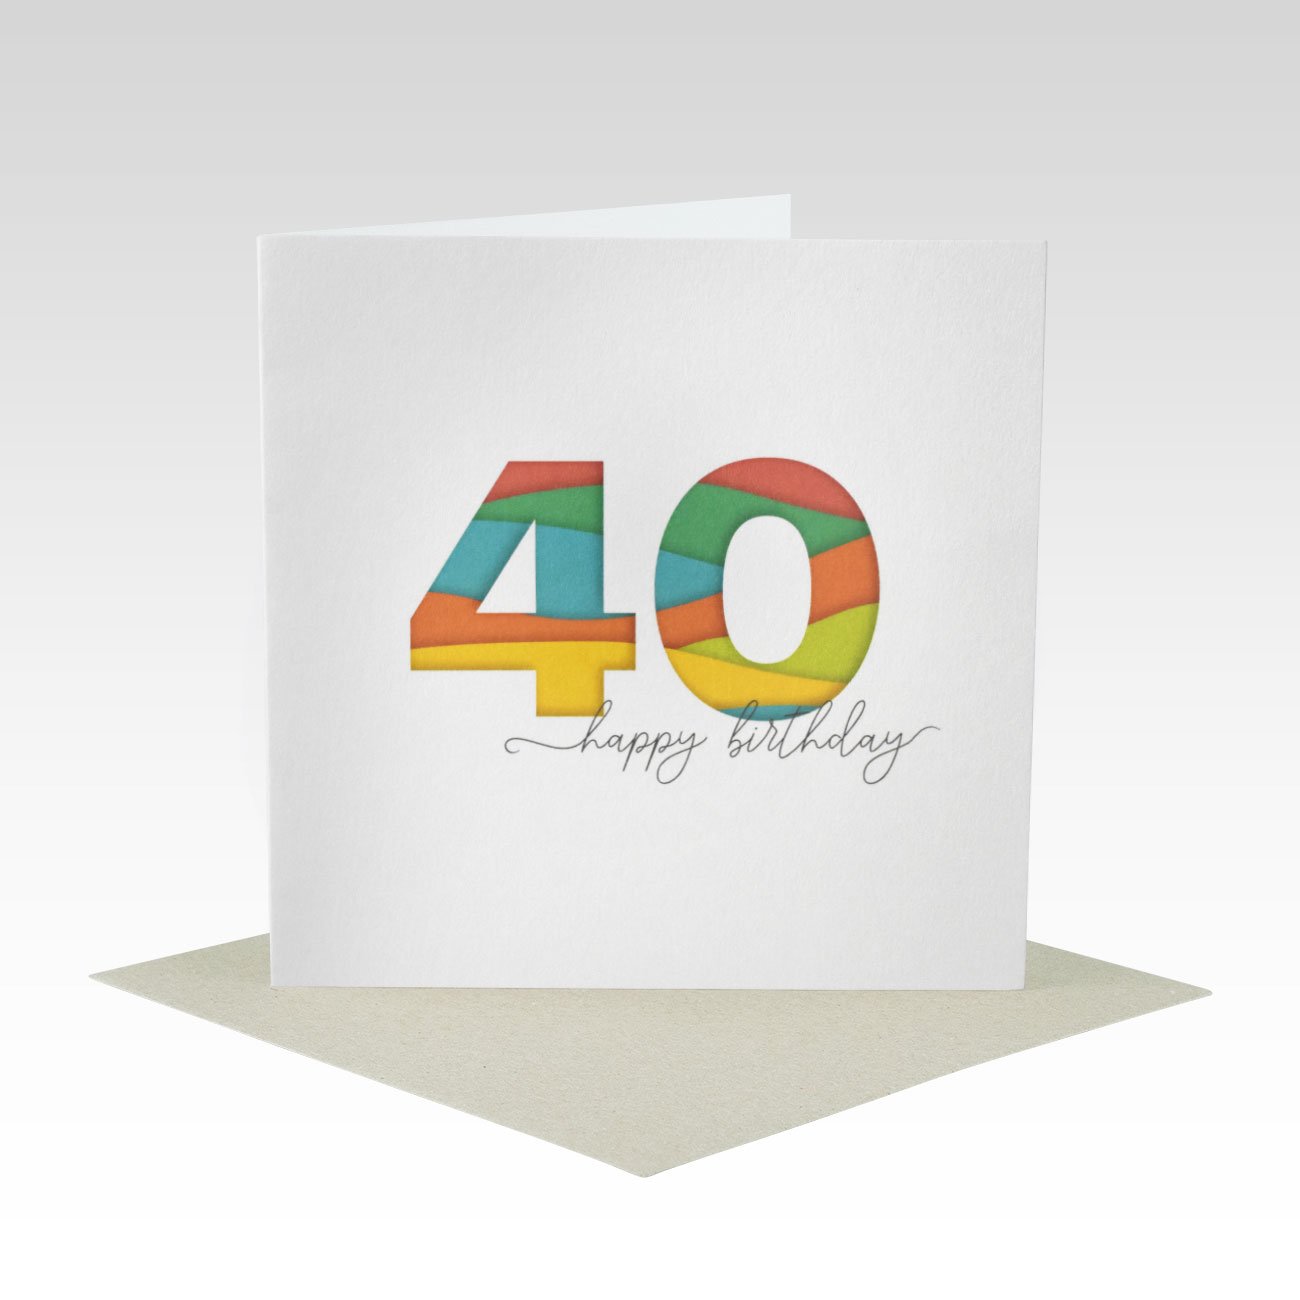 AGE030 - 40th Birthday Card - Rhicreative